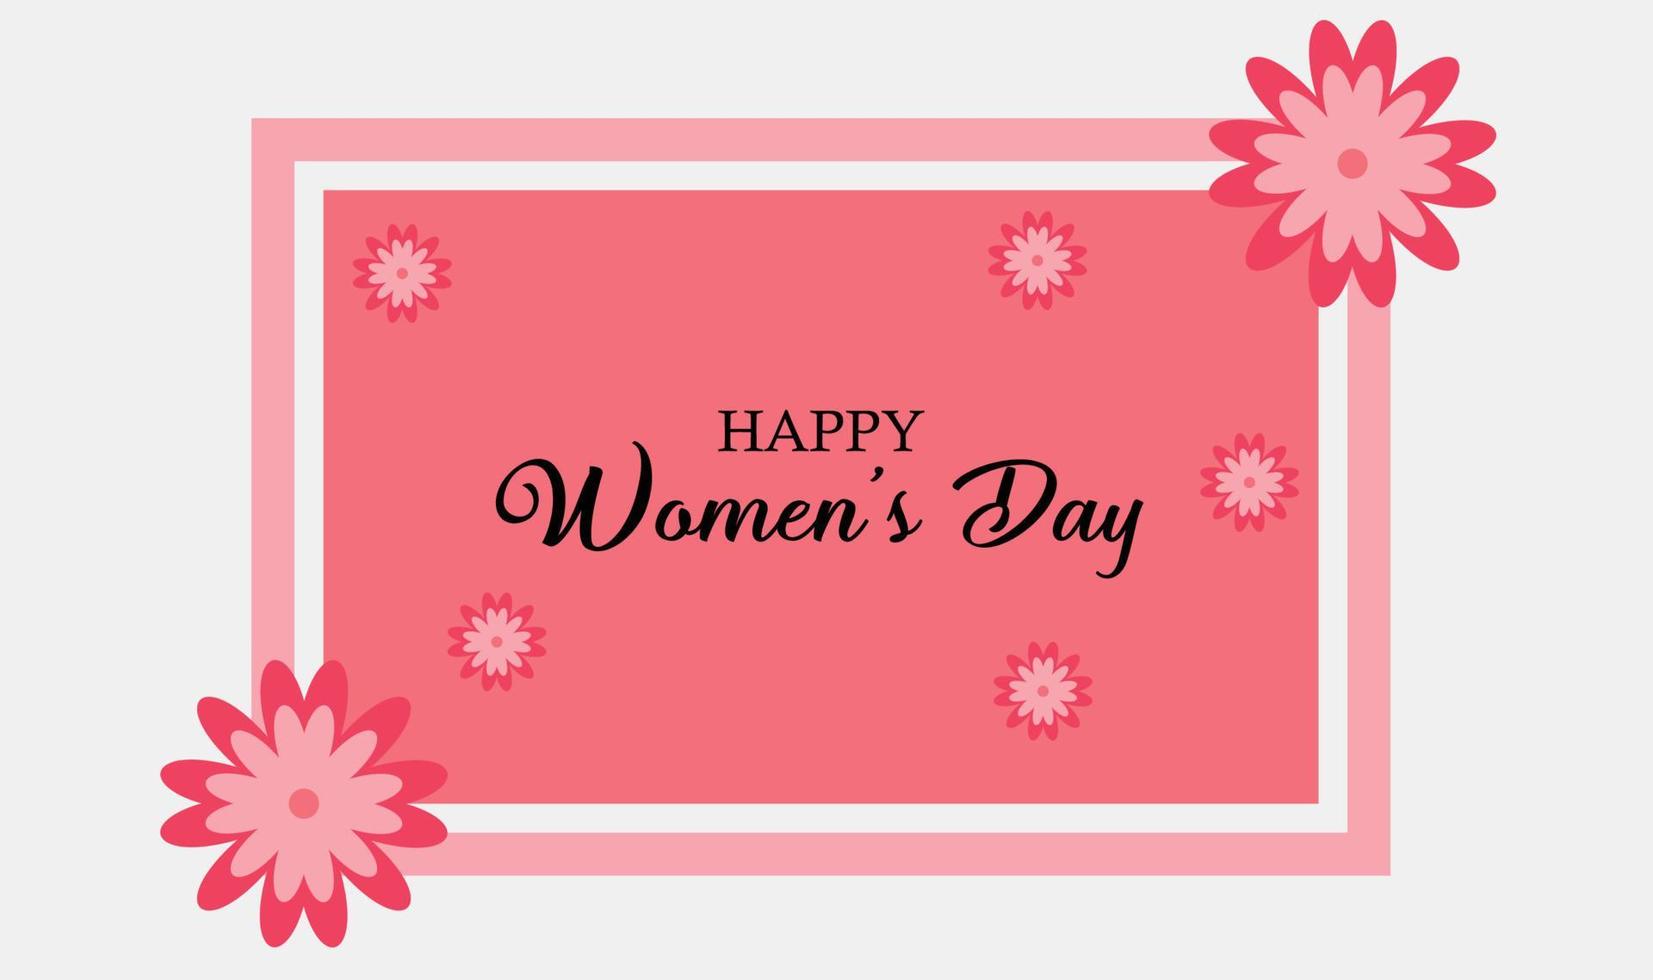 design de plano de fundo do dia internacional da mulher com flor em moldura rosa vetor